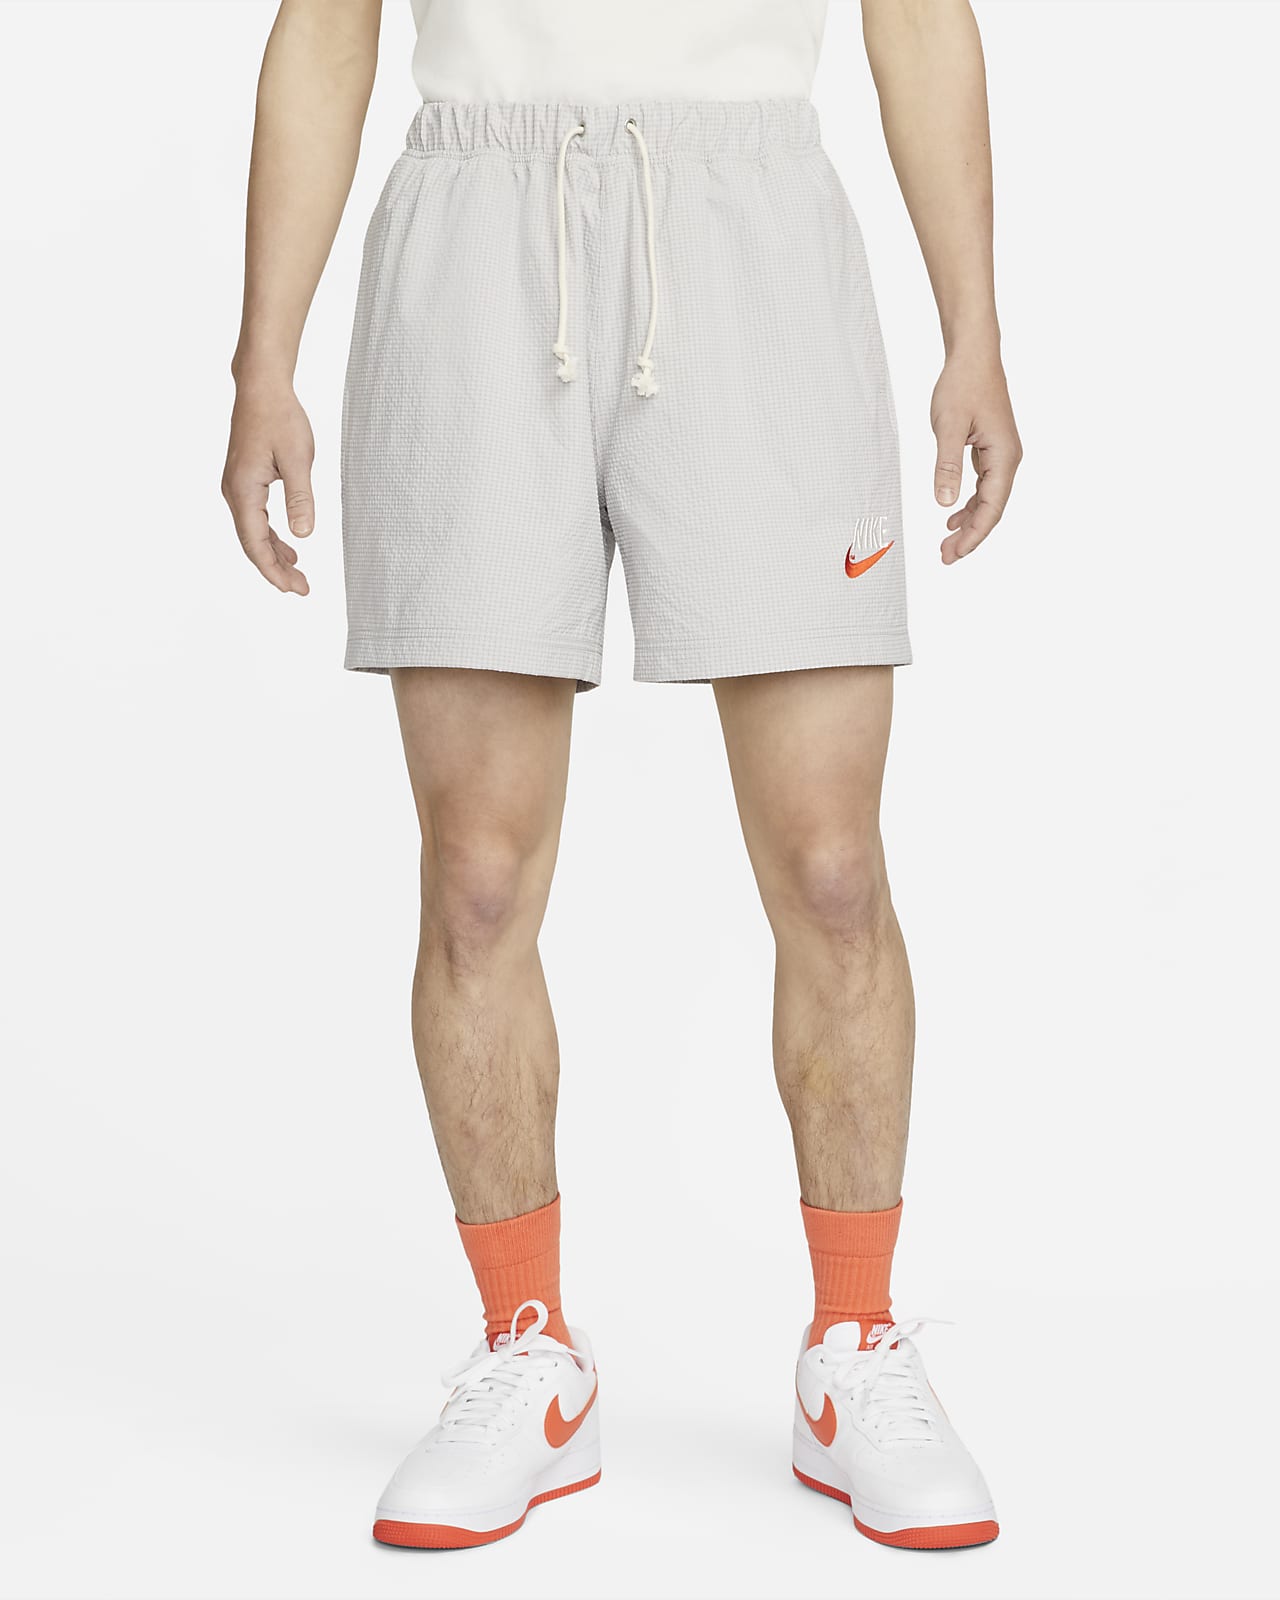 Nike Sportswear Men's Lined Woven Shorts